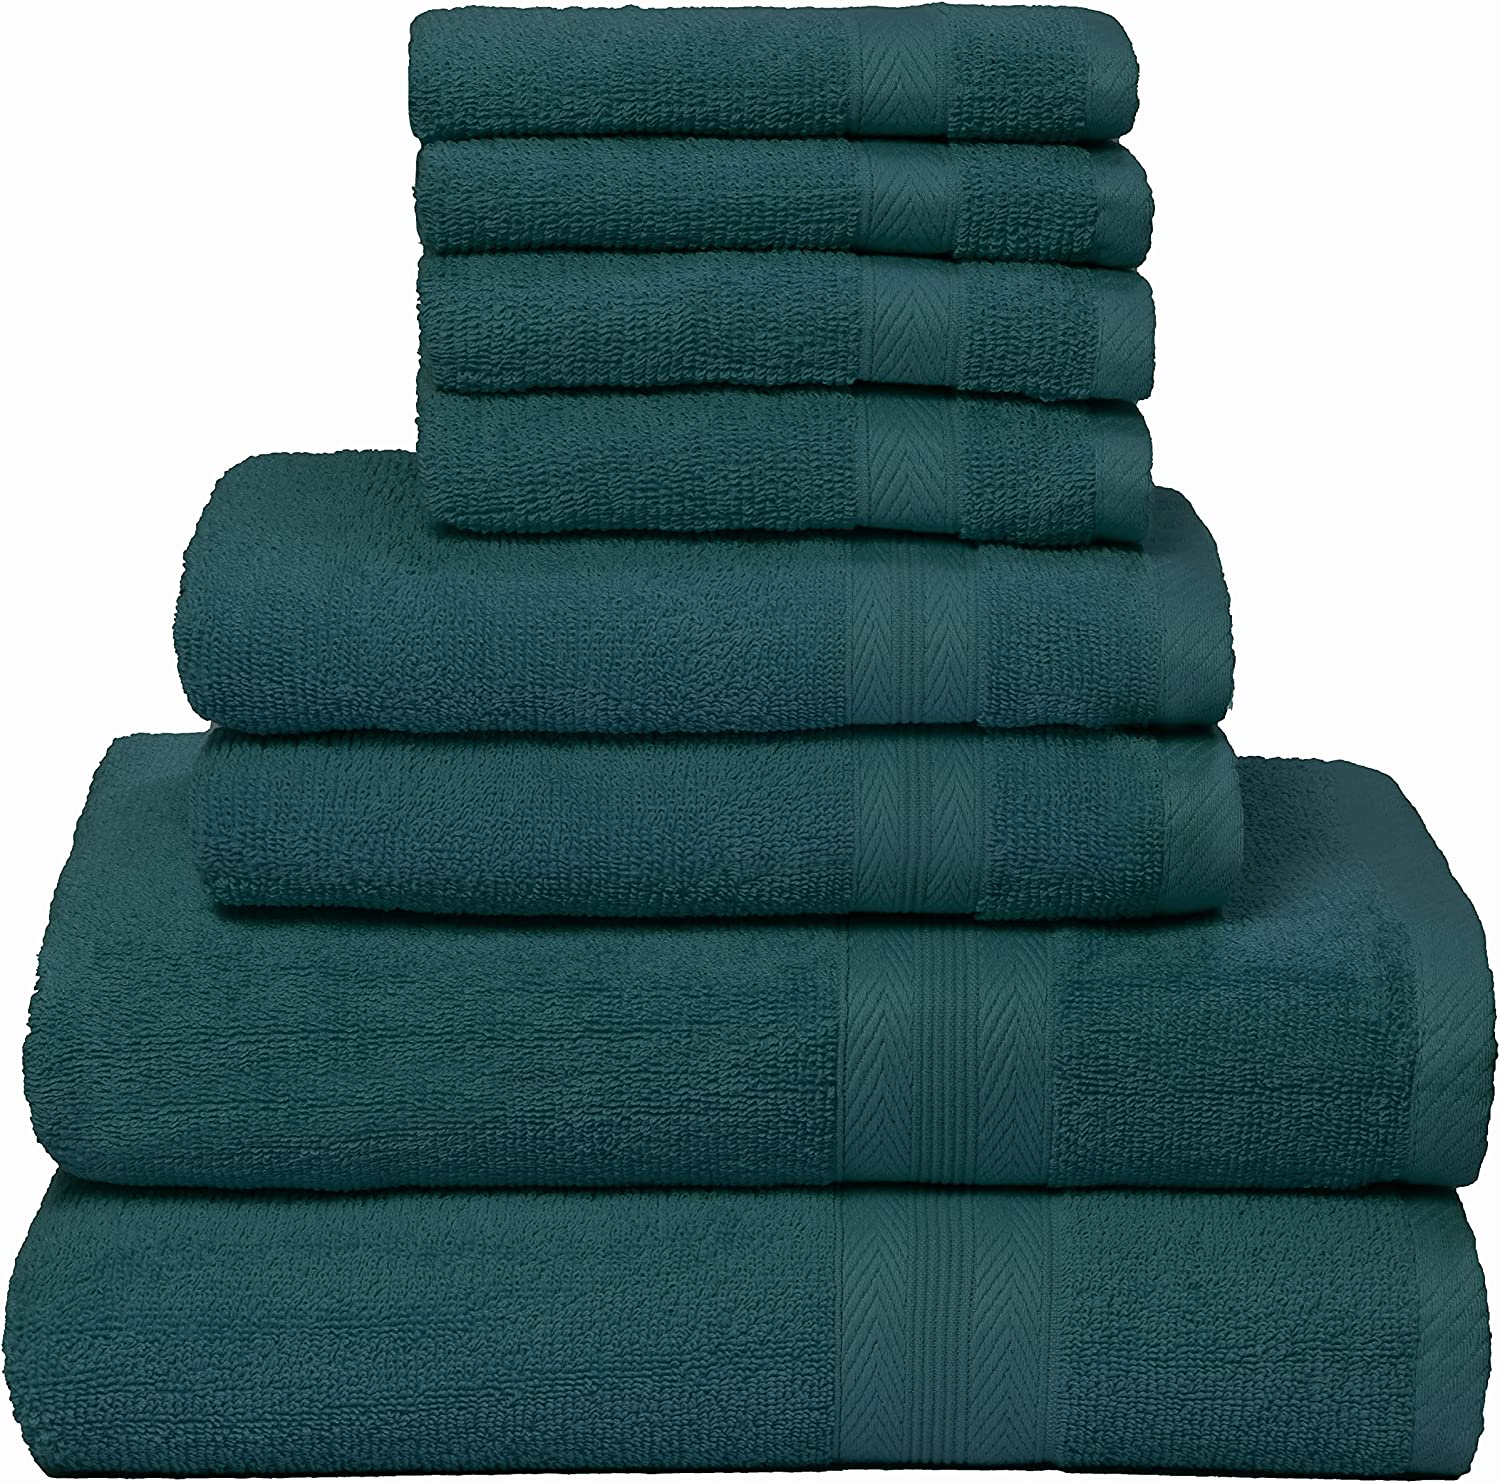 BOUTIQUO 8 Piece Towel Set 100% Ring Spun Cotton, 2 Bath Towels